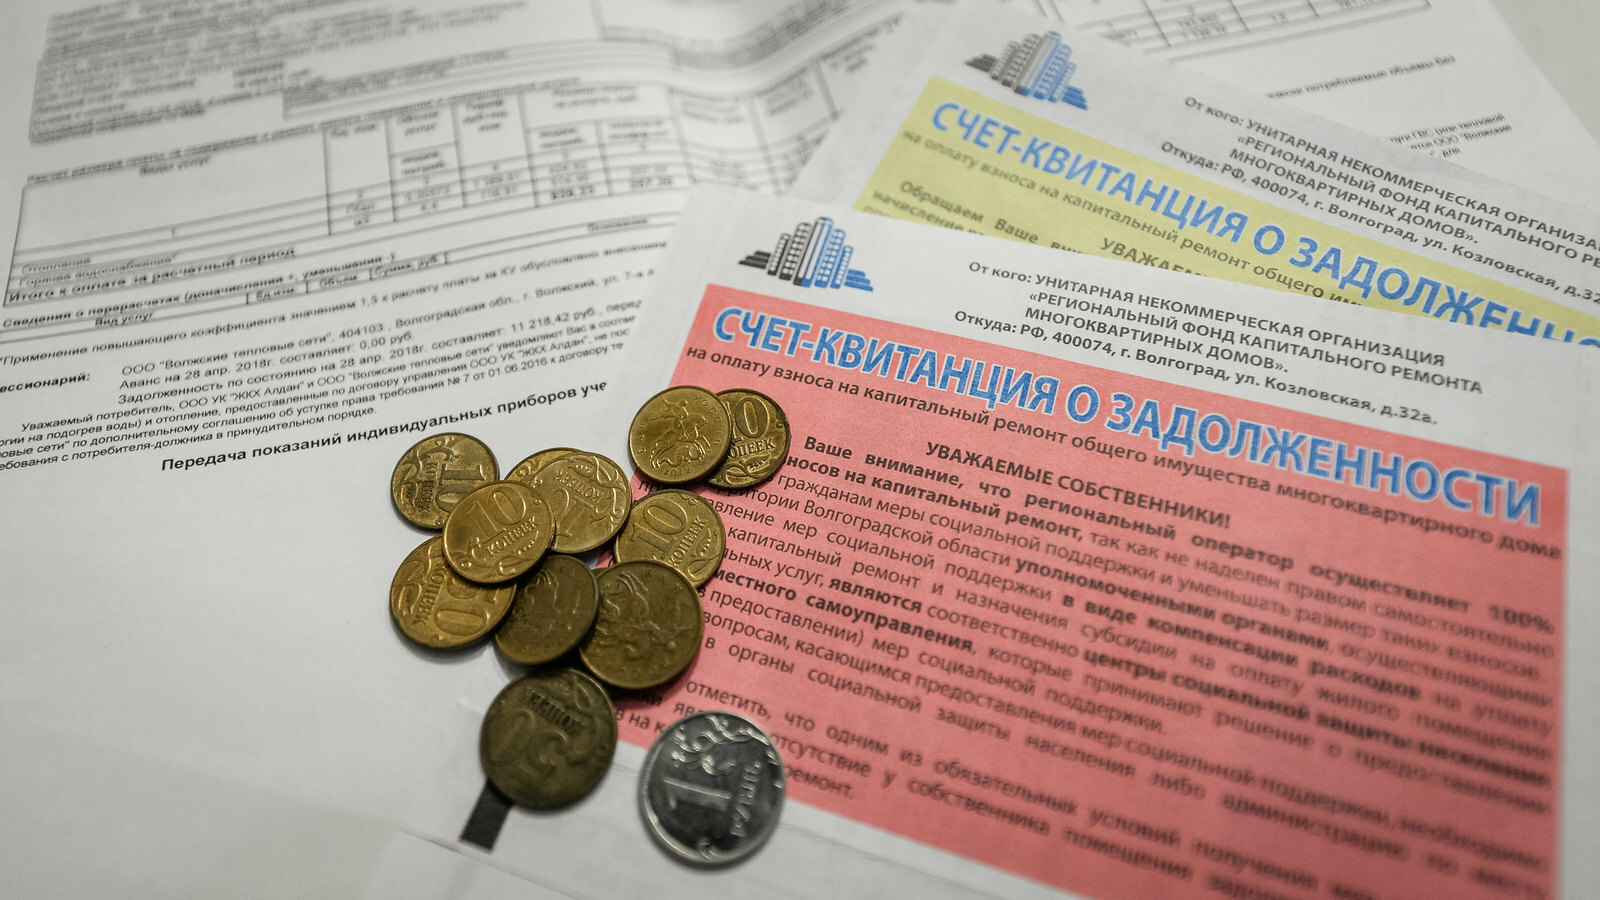 Теплосети Кисловодска наймут коллекторов для взыскания долгов с горожан